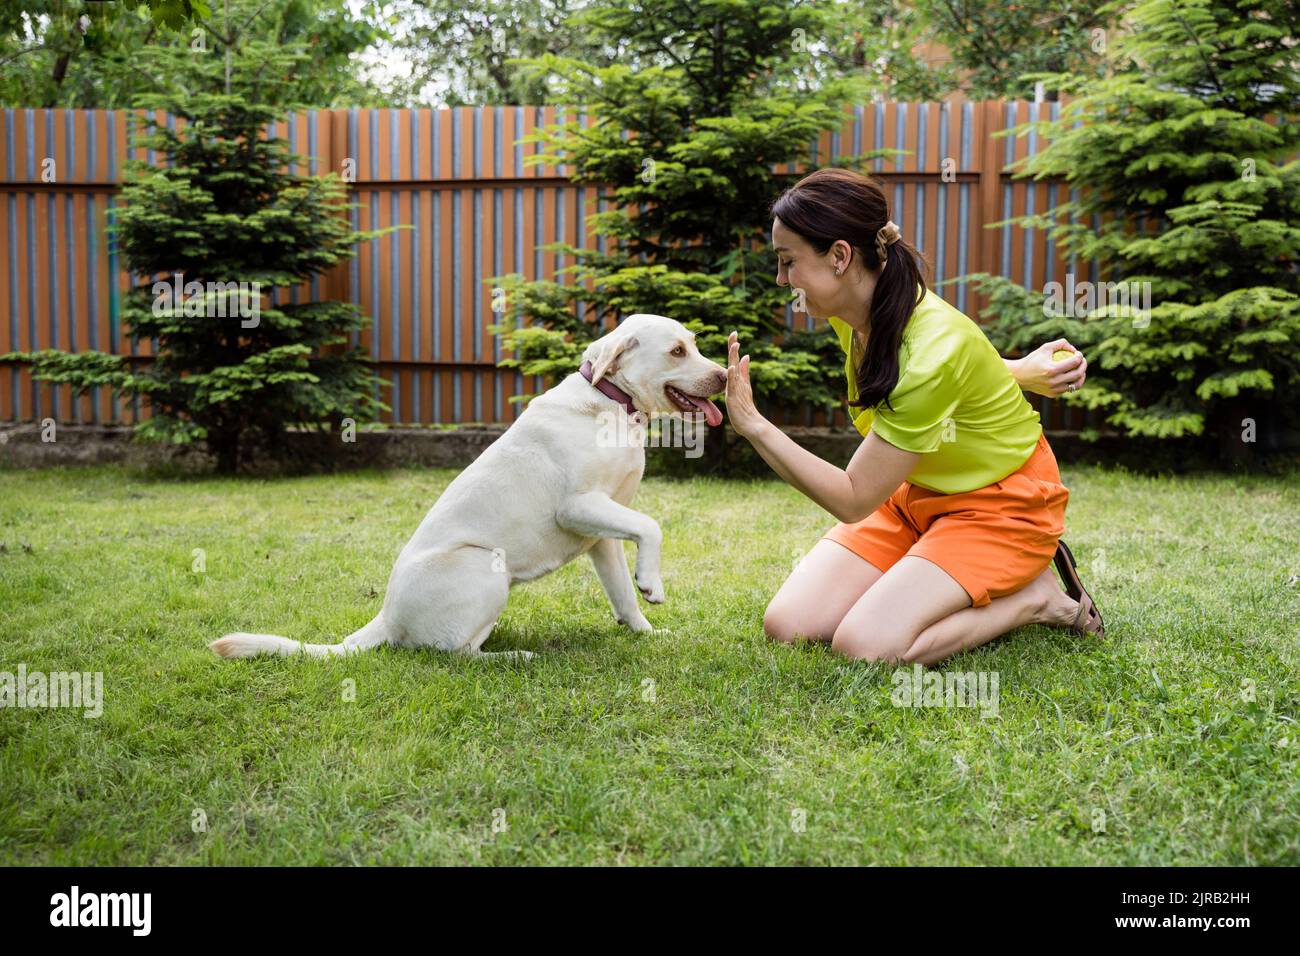 Verspielte Frau versteckt Ball und zeigt Stop-Geste Labrador im Hinterhof Stockfoto